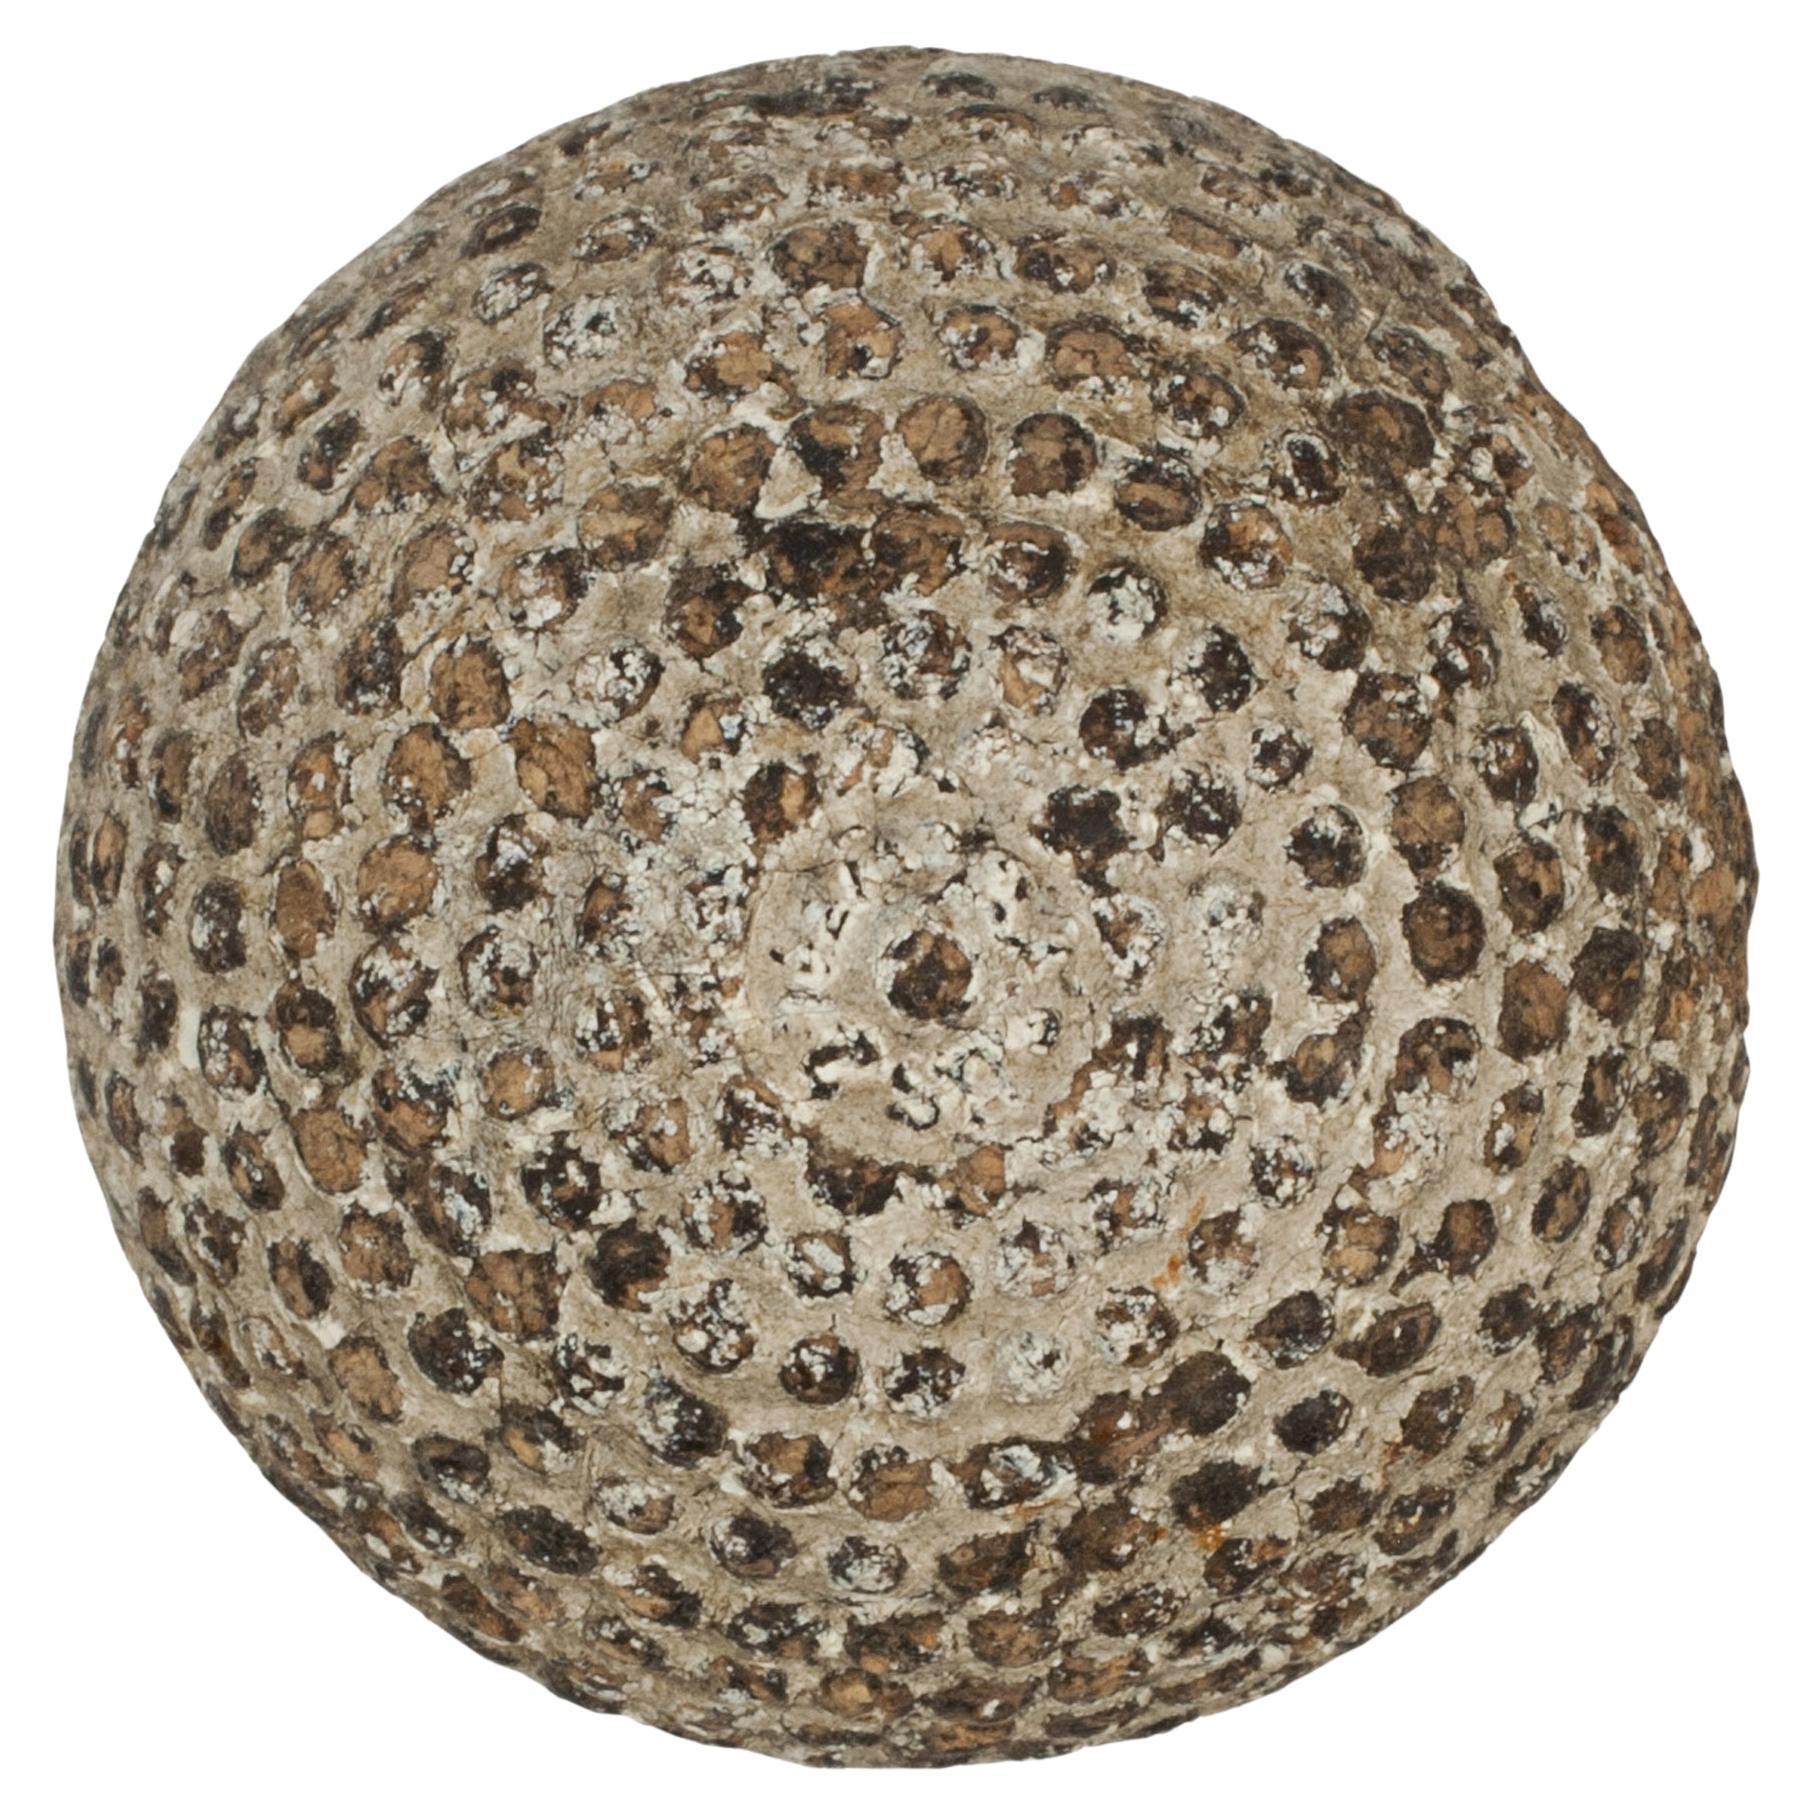 Bramble Pattern Rubber Core Golf Ball